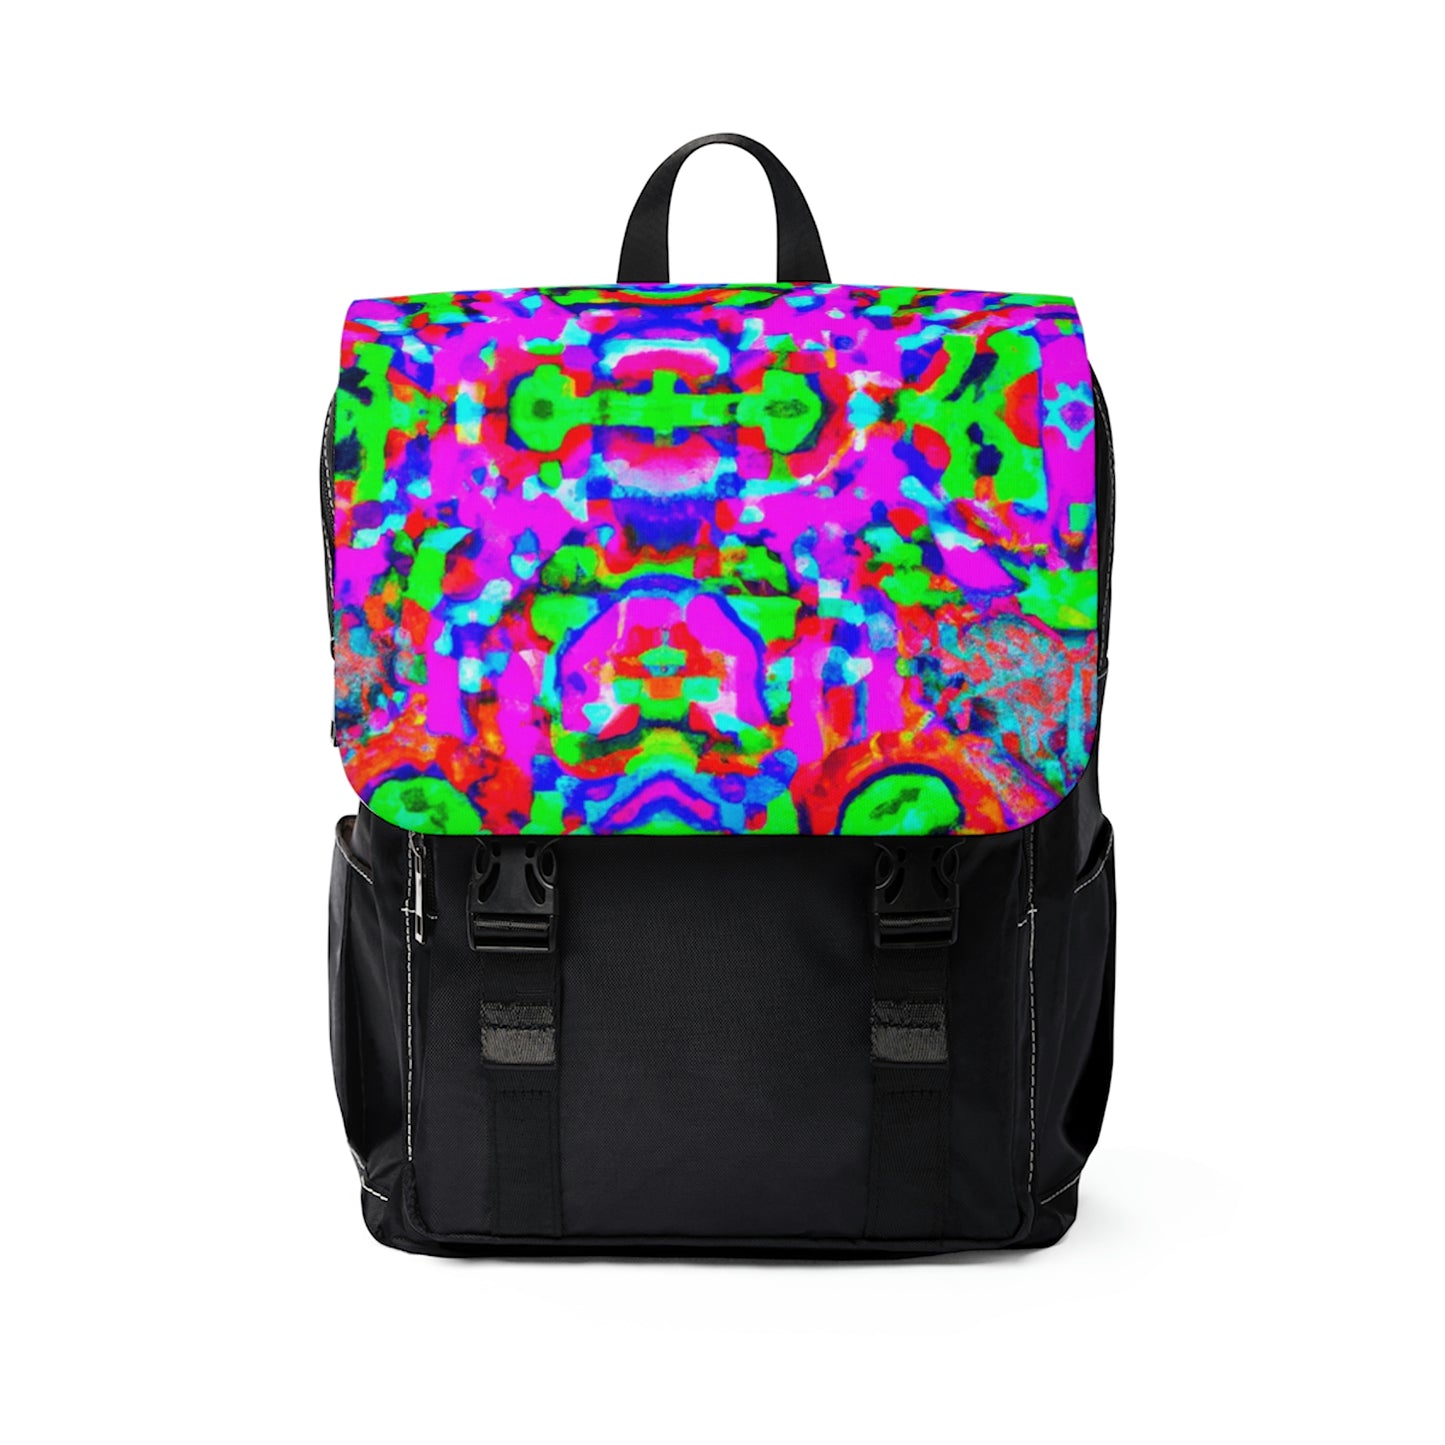 Giorgina - Psychedelic Shoulder Travel Backpack Bag